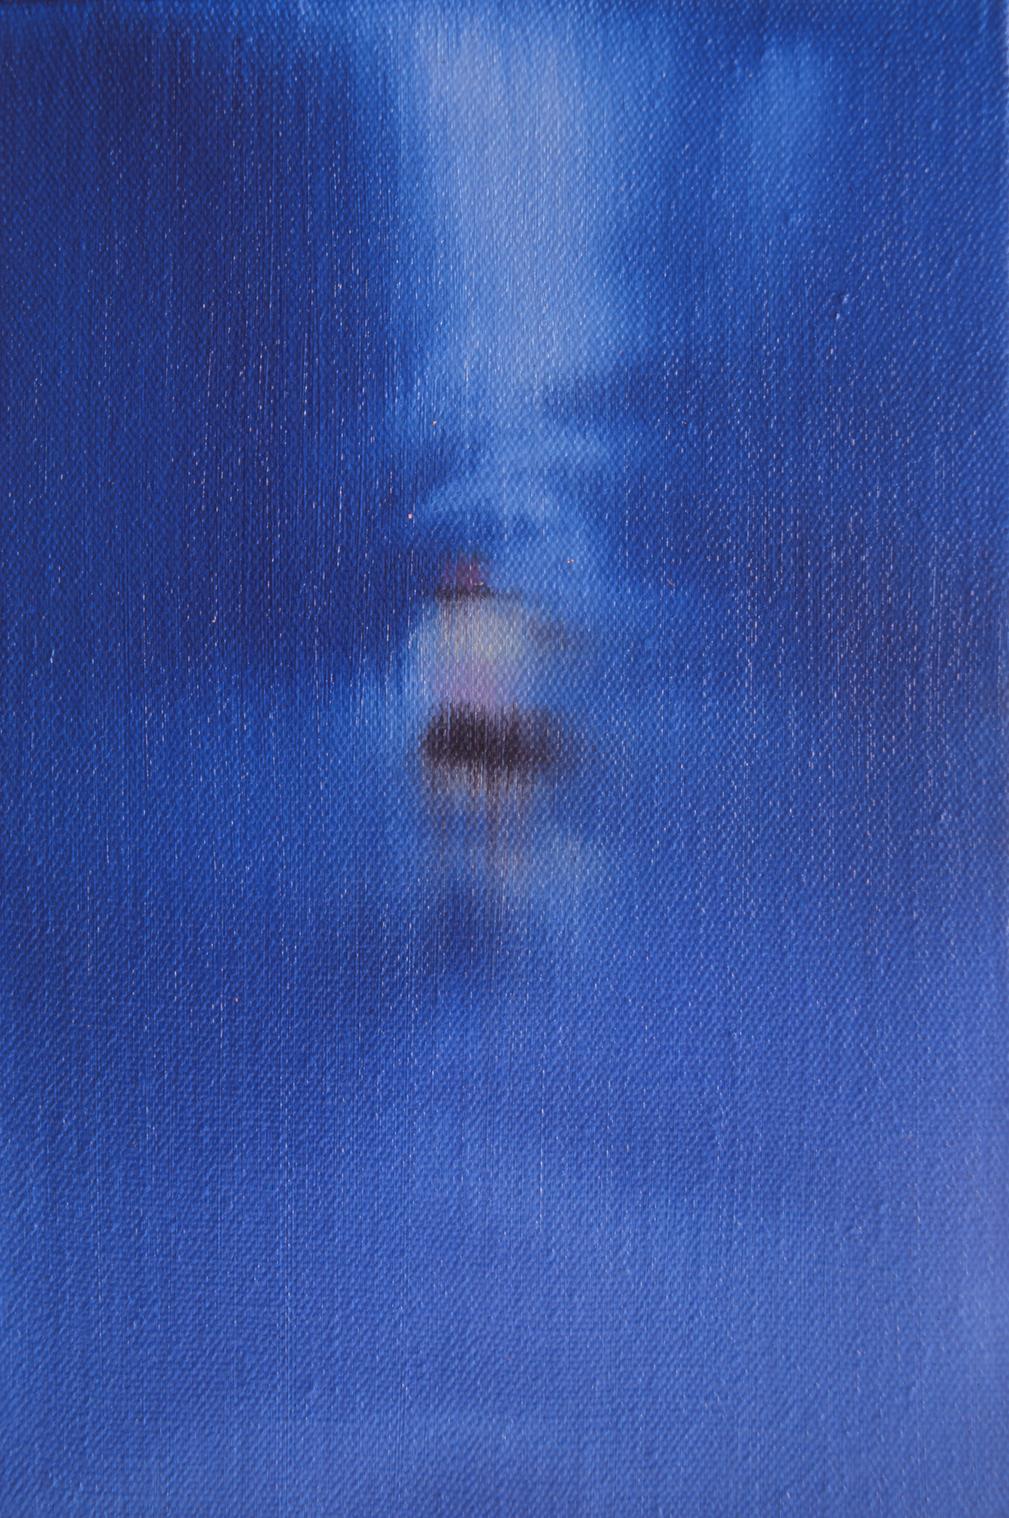 Figurative Painting He Wenjue - Peinture figurative contemporaine texturée - Série Aquarelle n°2